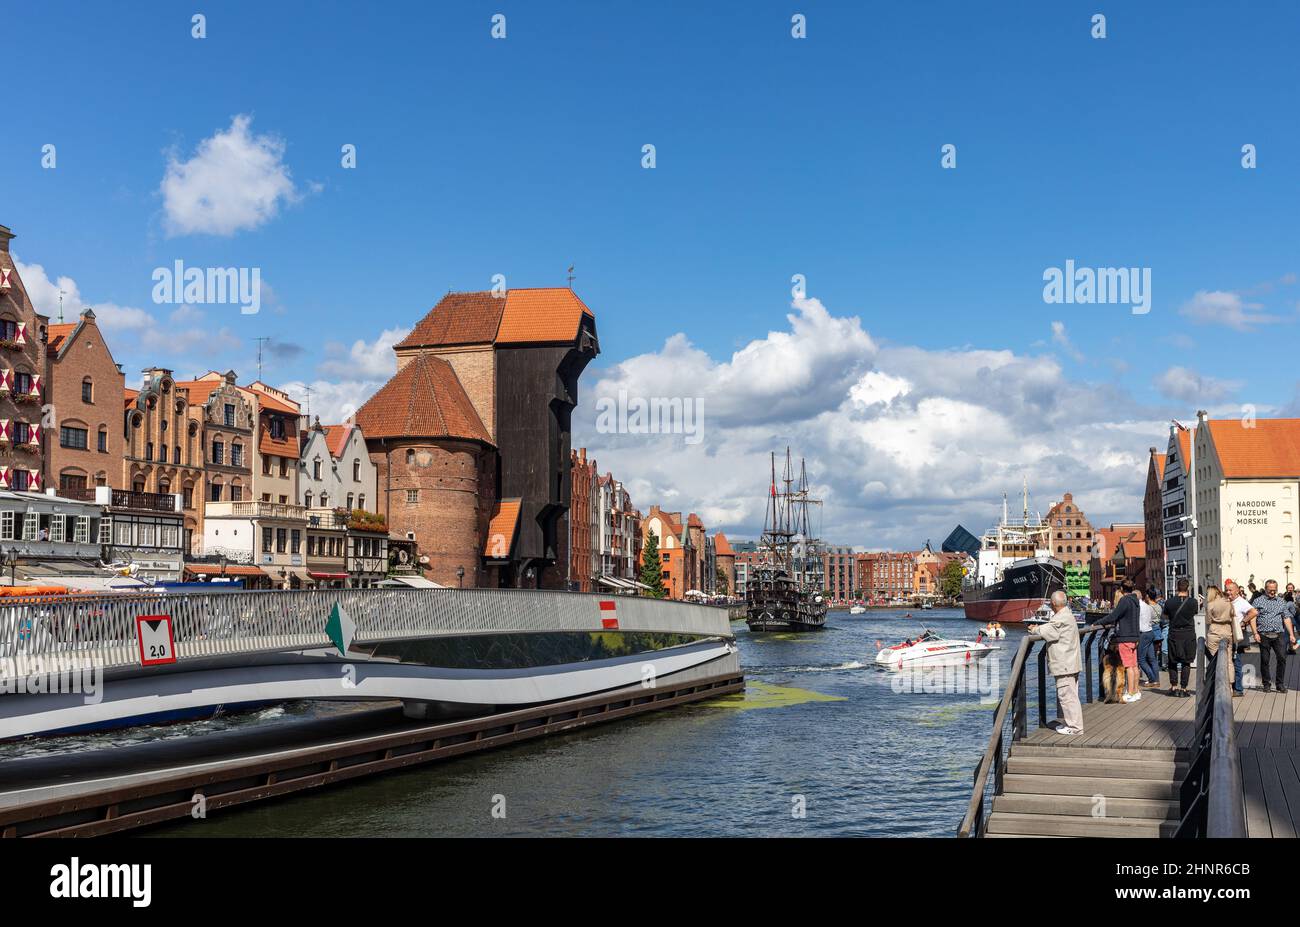 La vieille ville de Gdansk - des bâtiments historiques sur les rives de la rivière Motlawa Banque D'Images